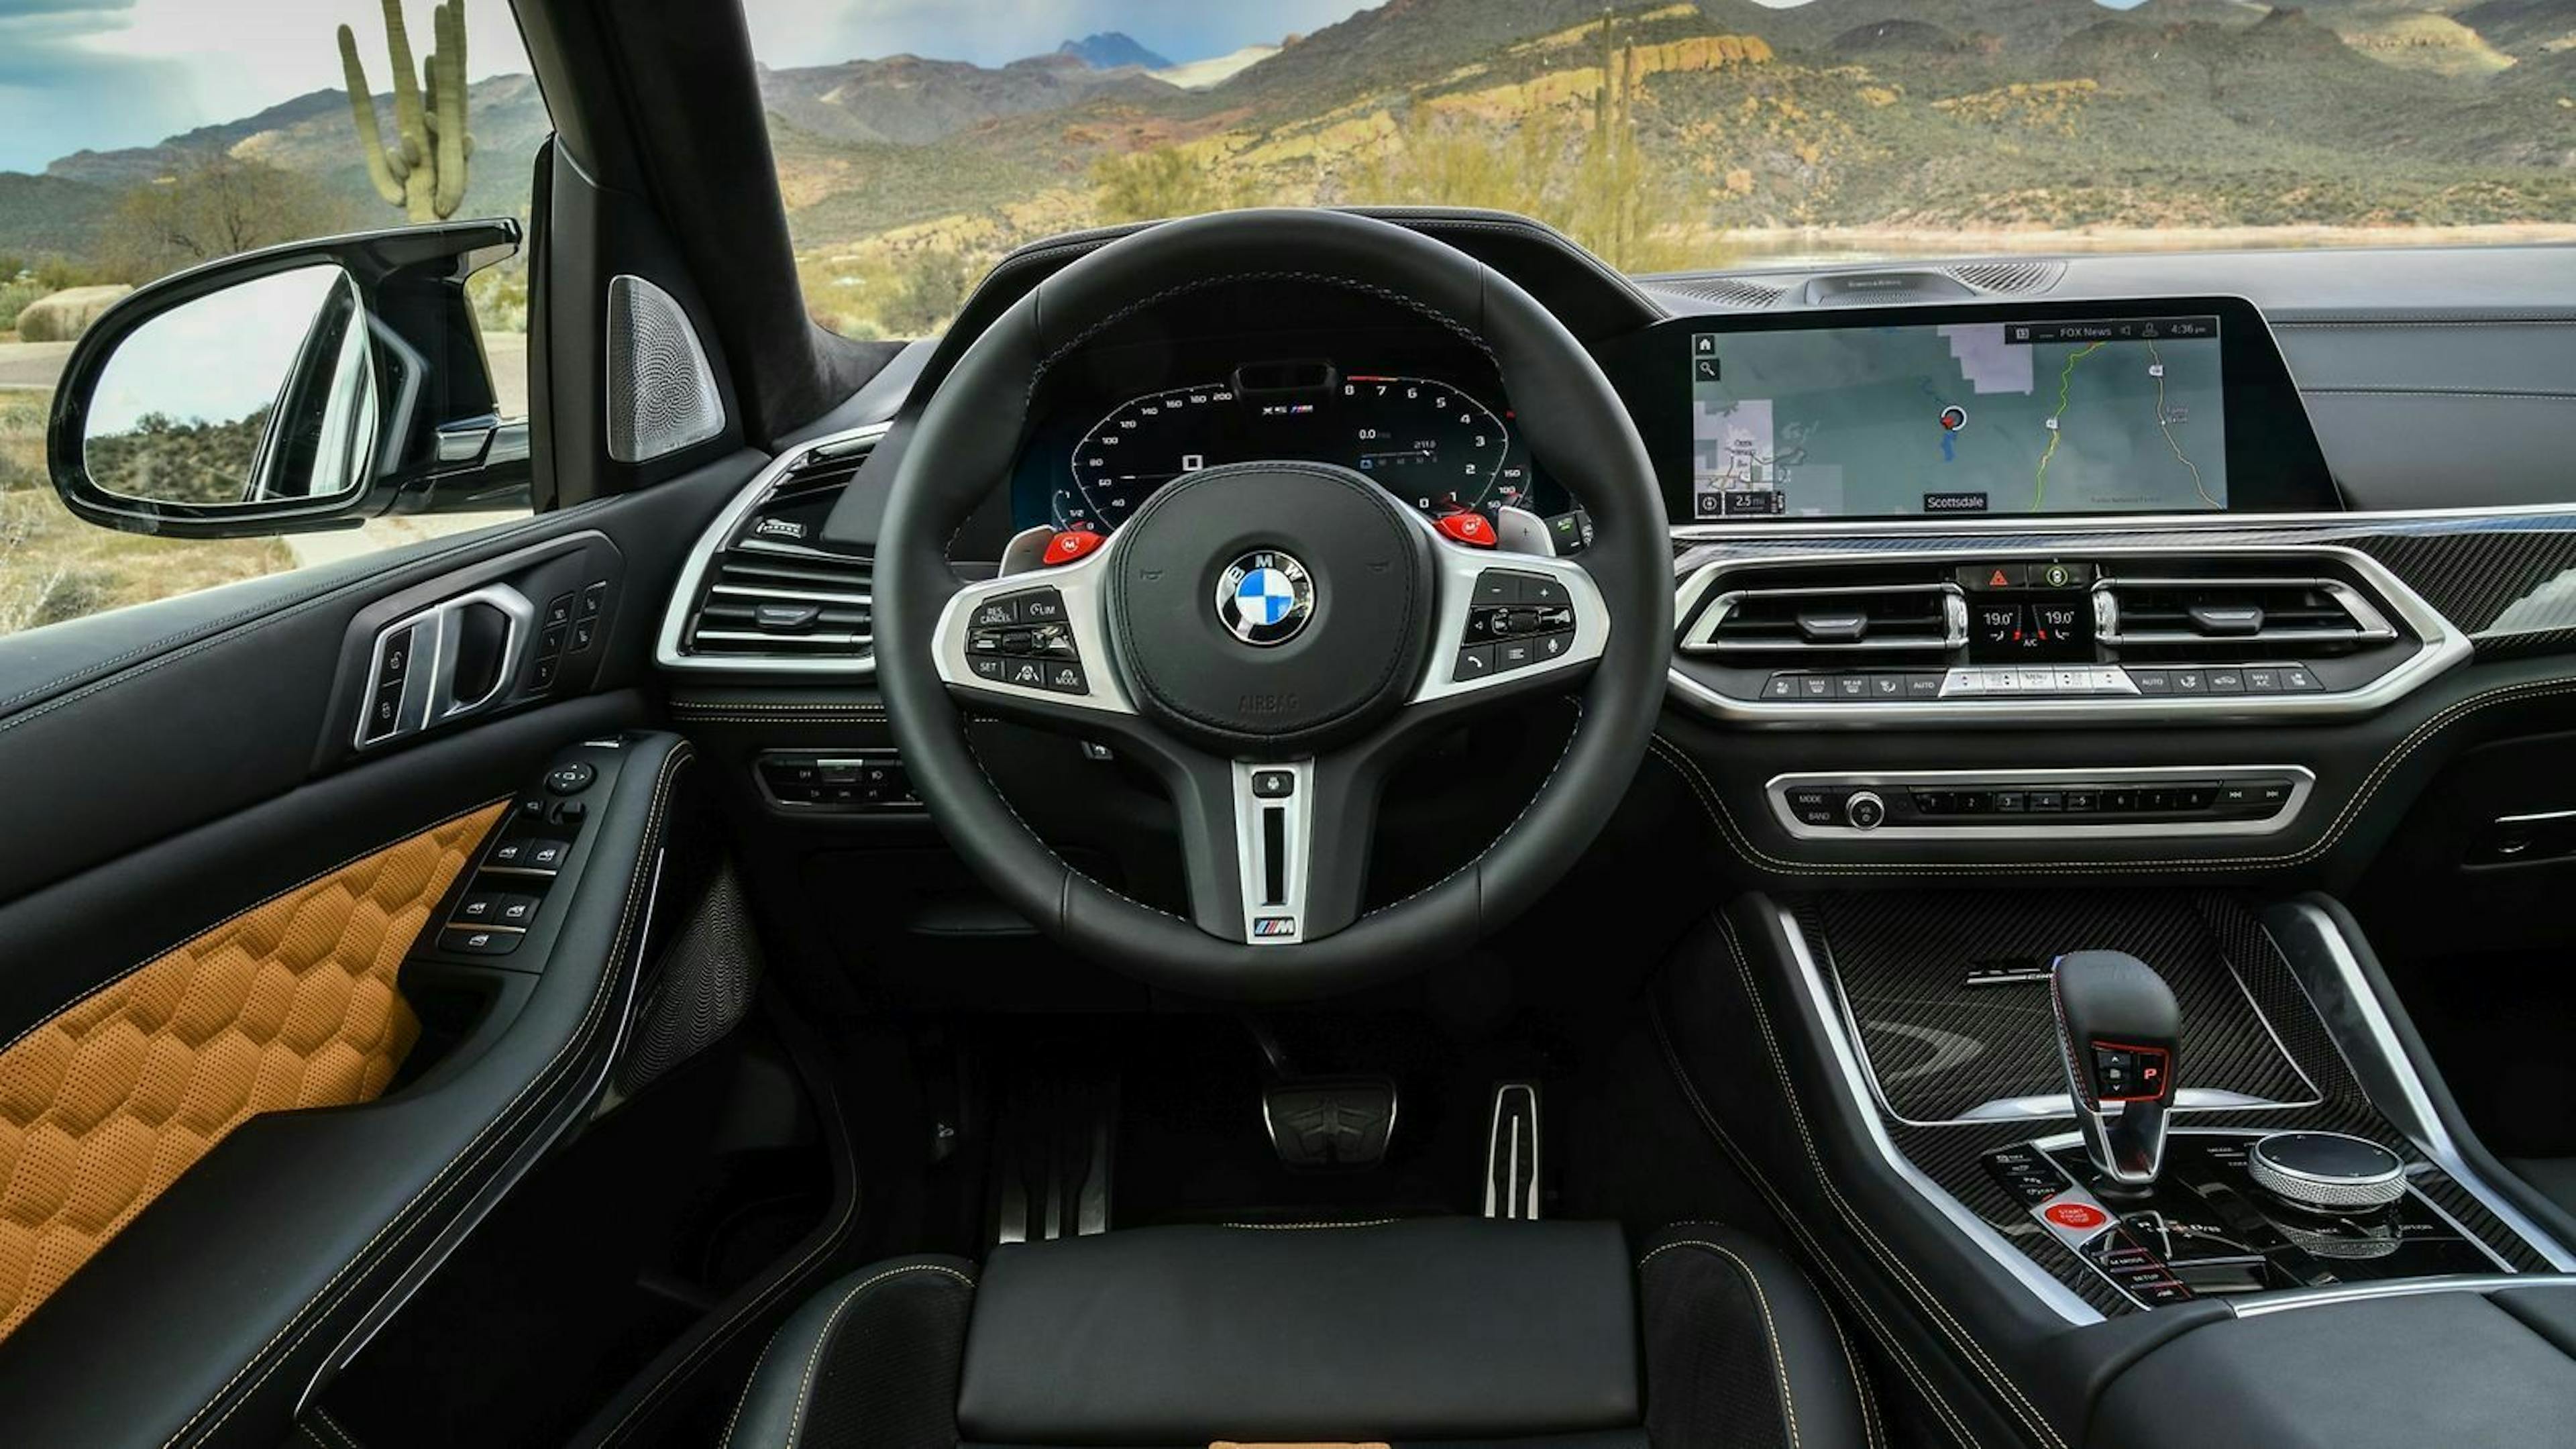 Zu sehen ist das Cockpit des BMW X5 M